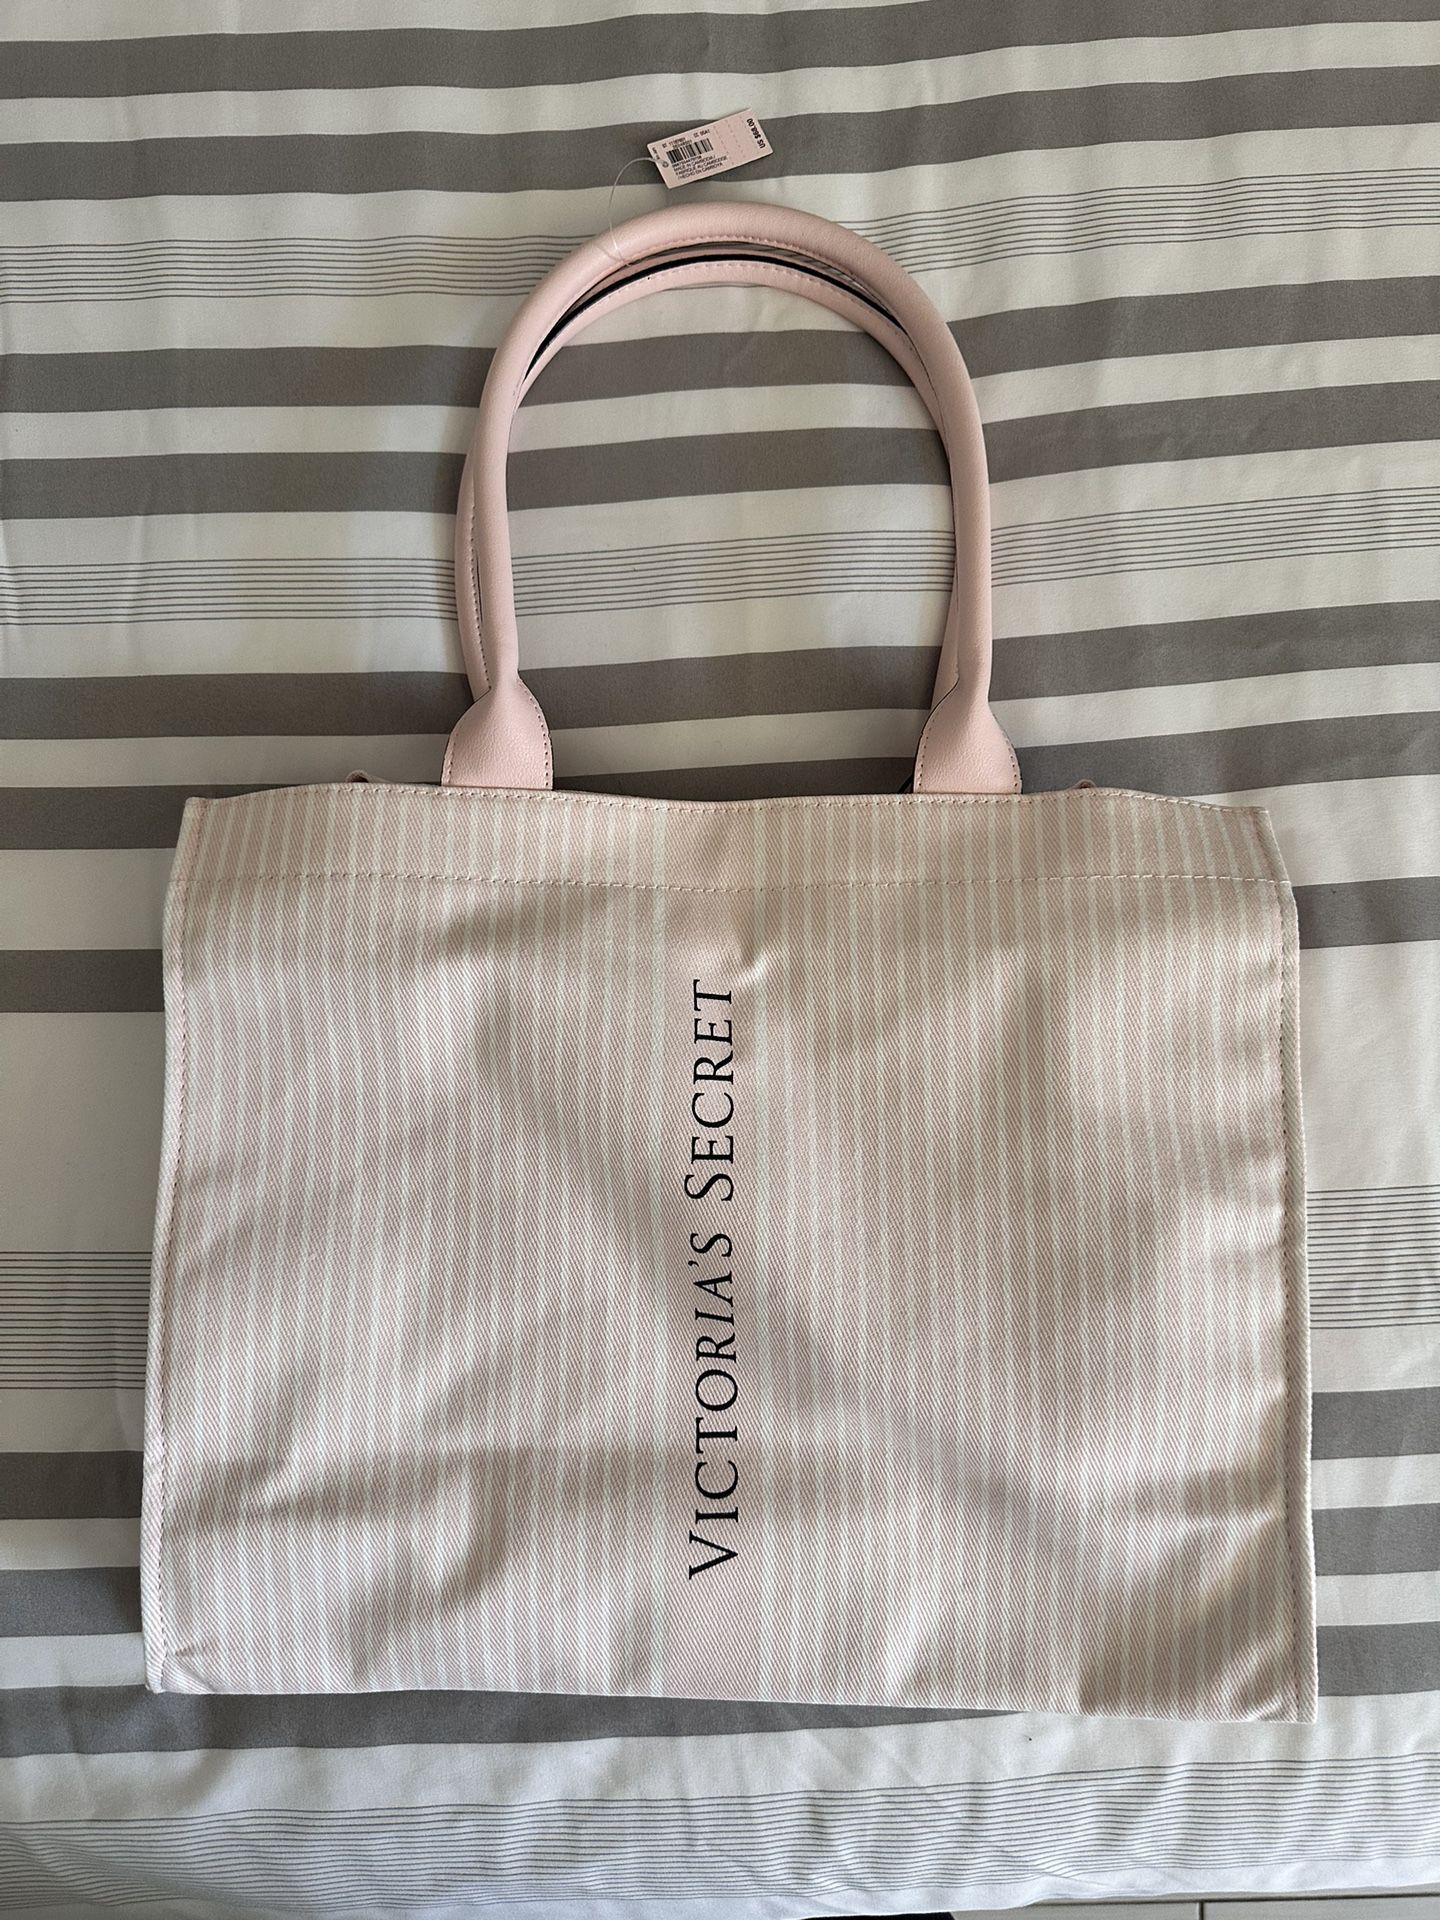 Medium Tote Bag Victoria’s Secret.